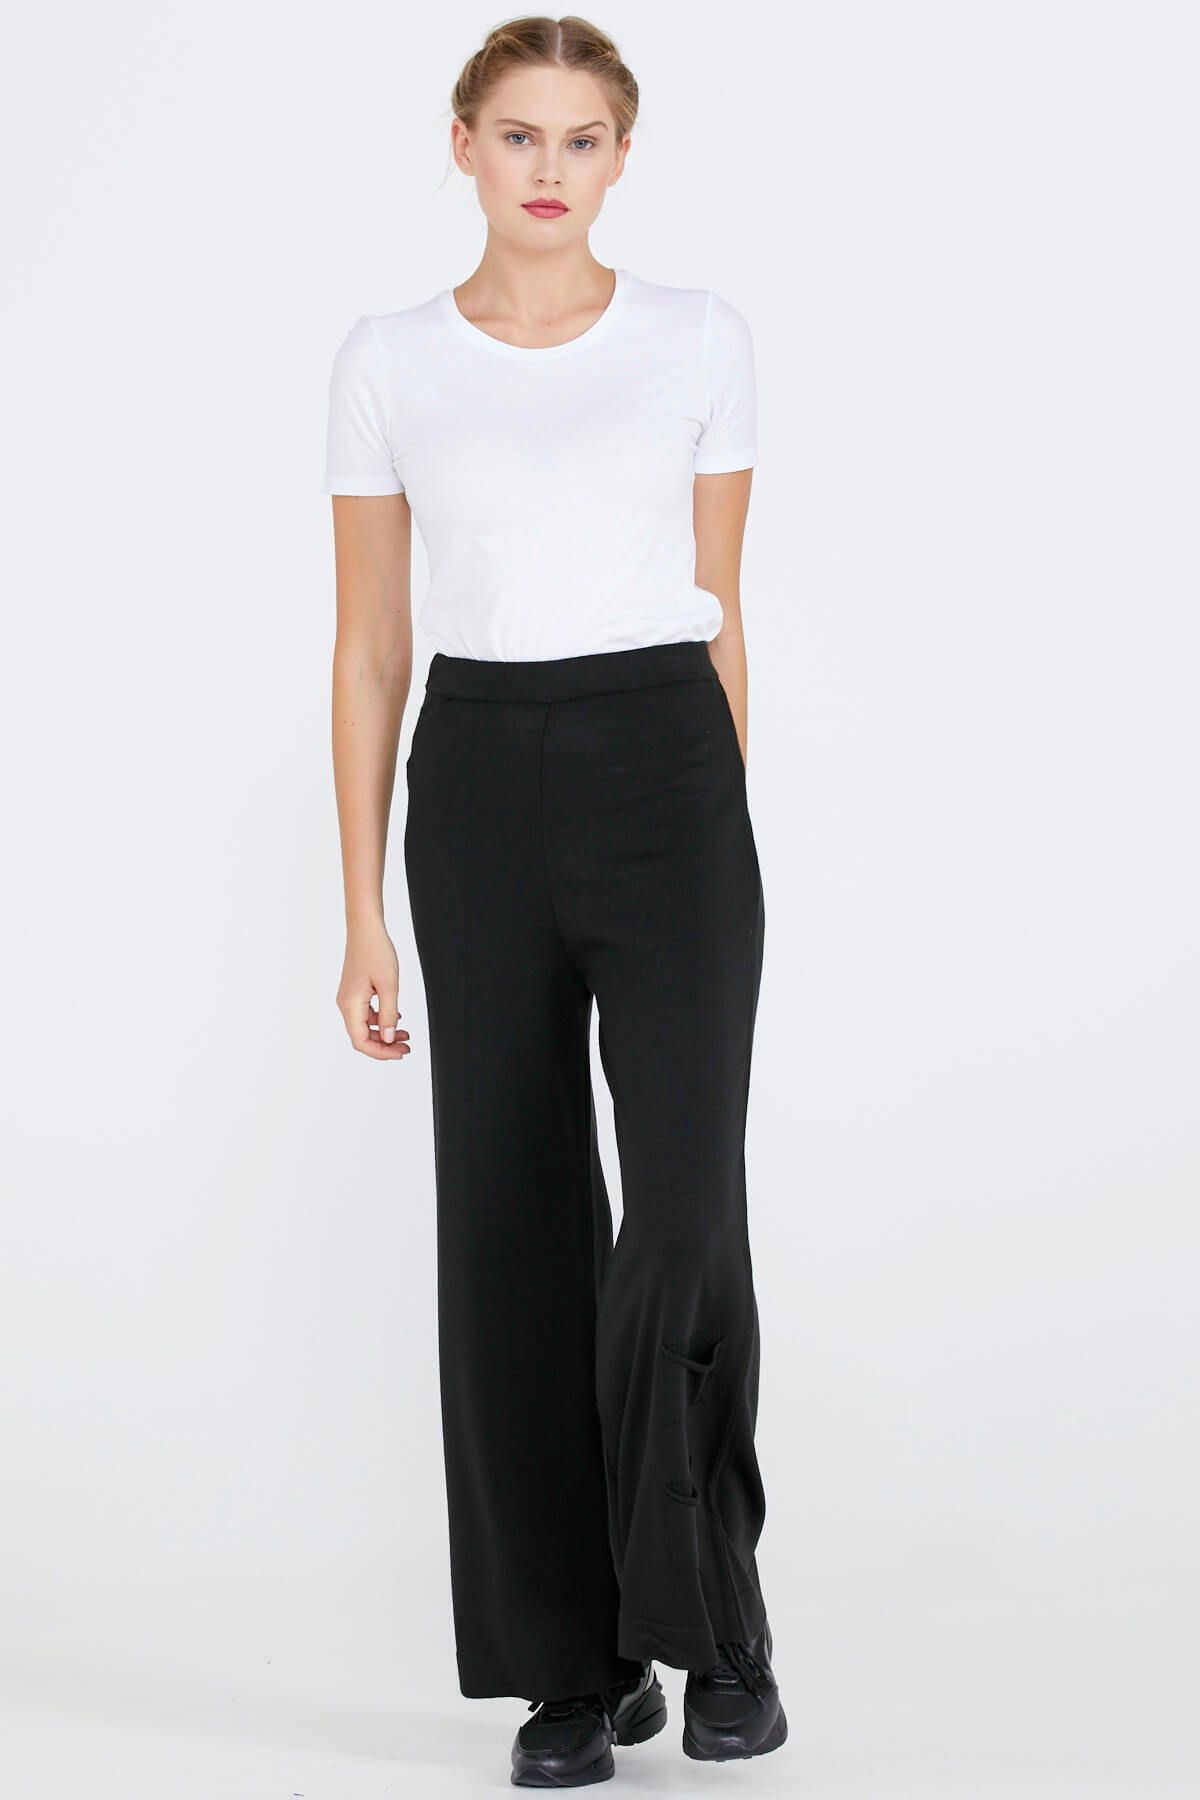 Sementa Triko Kadın Paçası Cep Detaylı Pantolon - Siyah